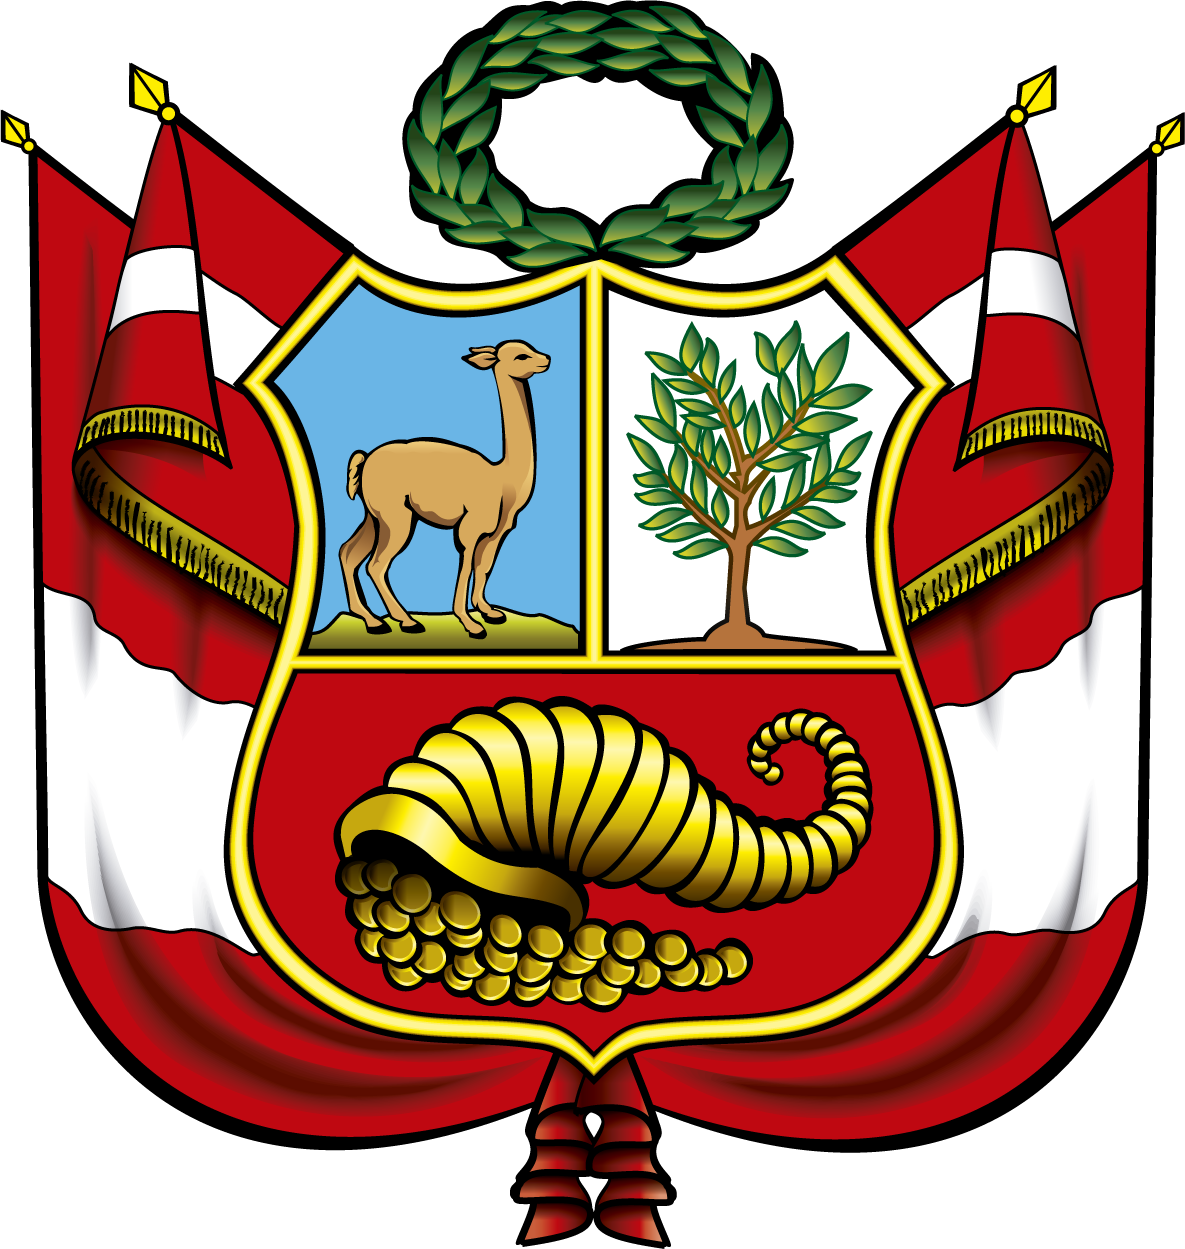 Escudo Del Peru Logo Del Peru Hd Png Download Kindpng | Images and ...